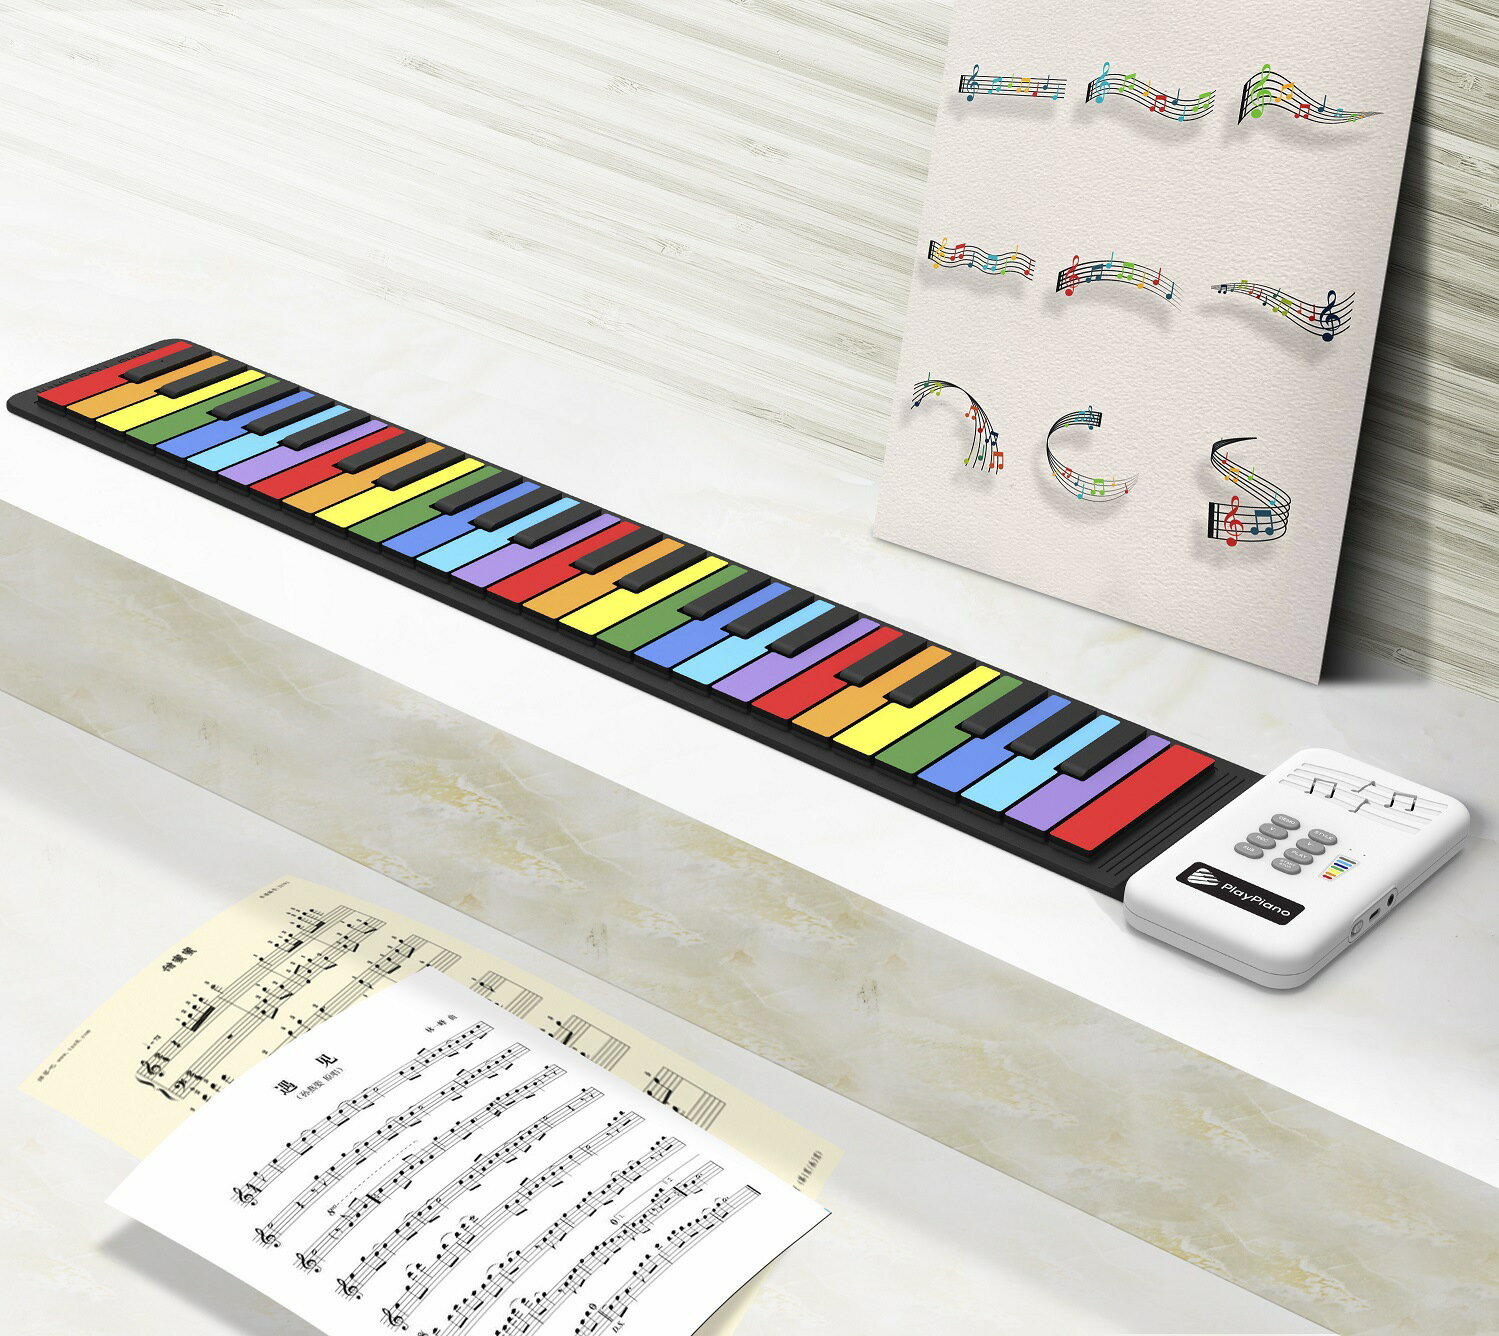 49鍵手卷鋼琴 兒童入門鍵盤樂趣硅膠琴 彩虹版手卷琴 兒童電子琴